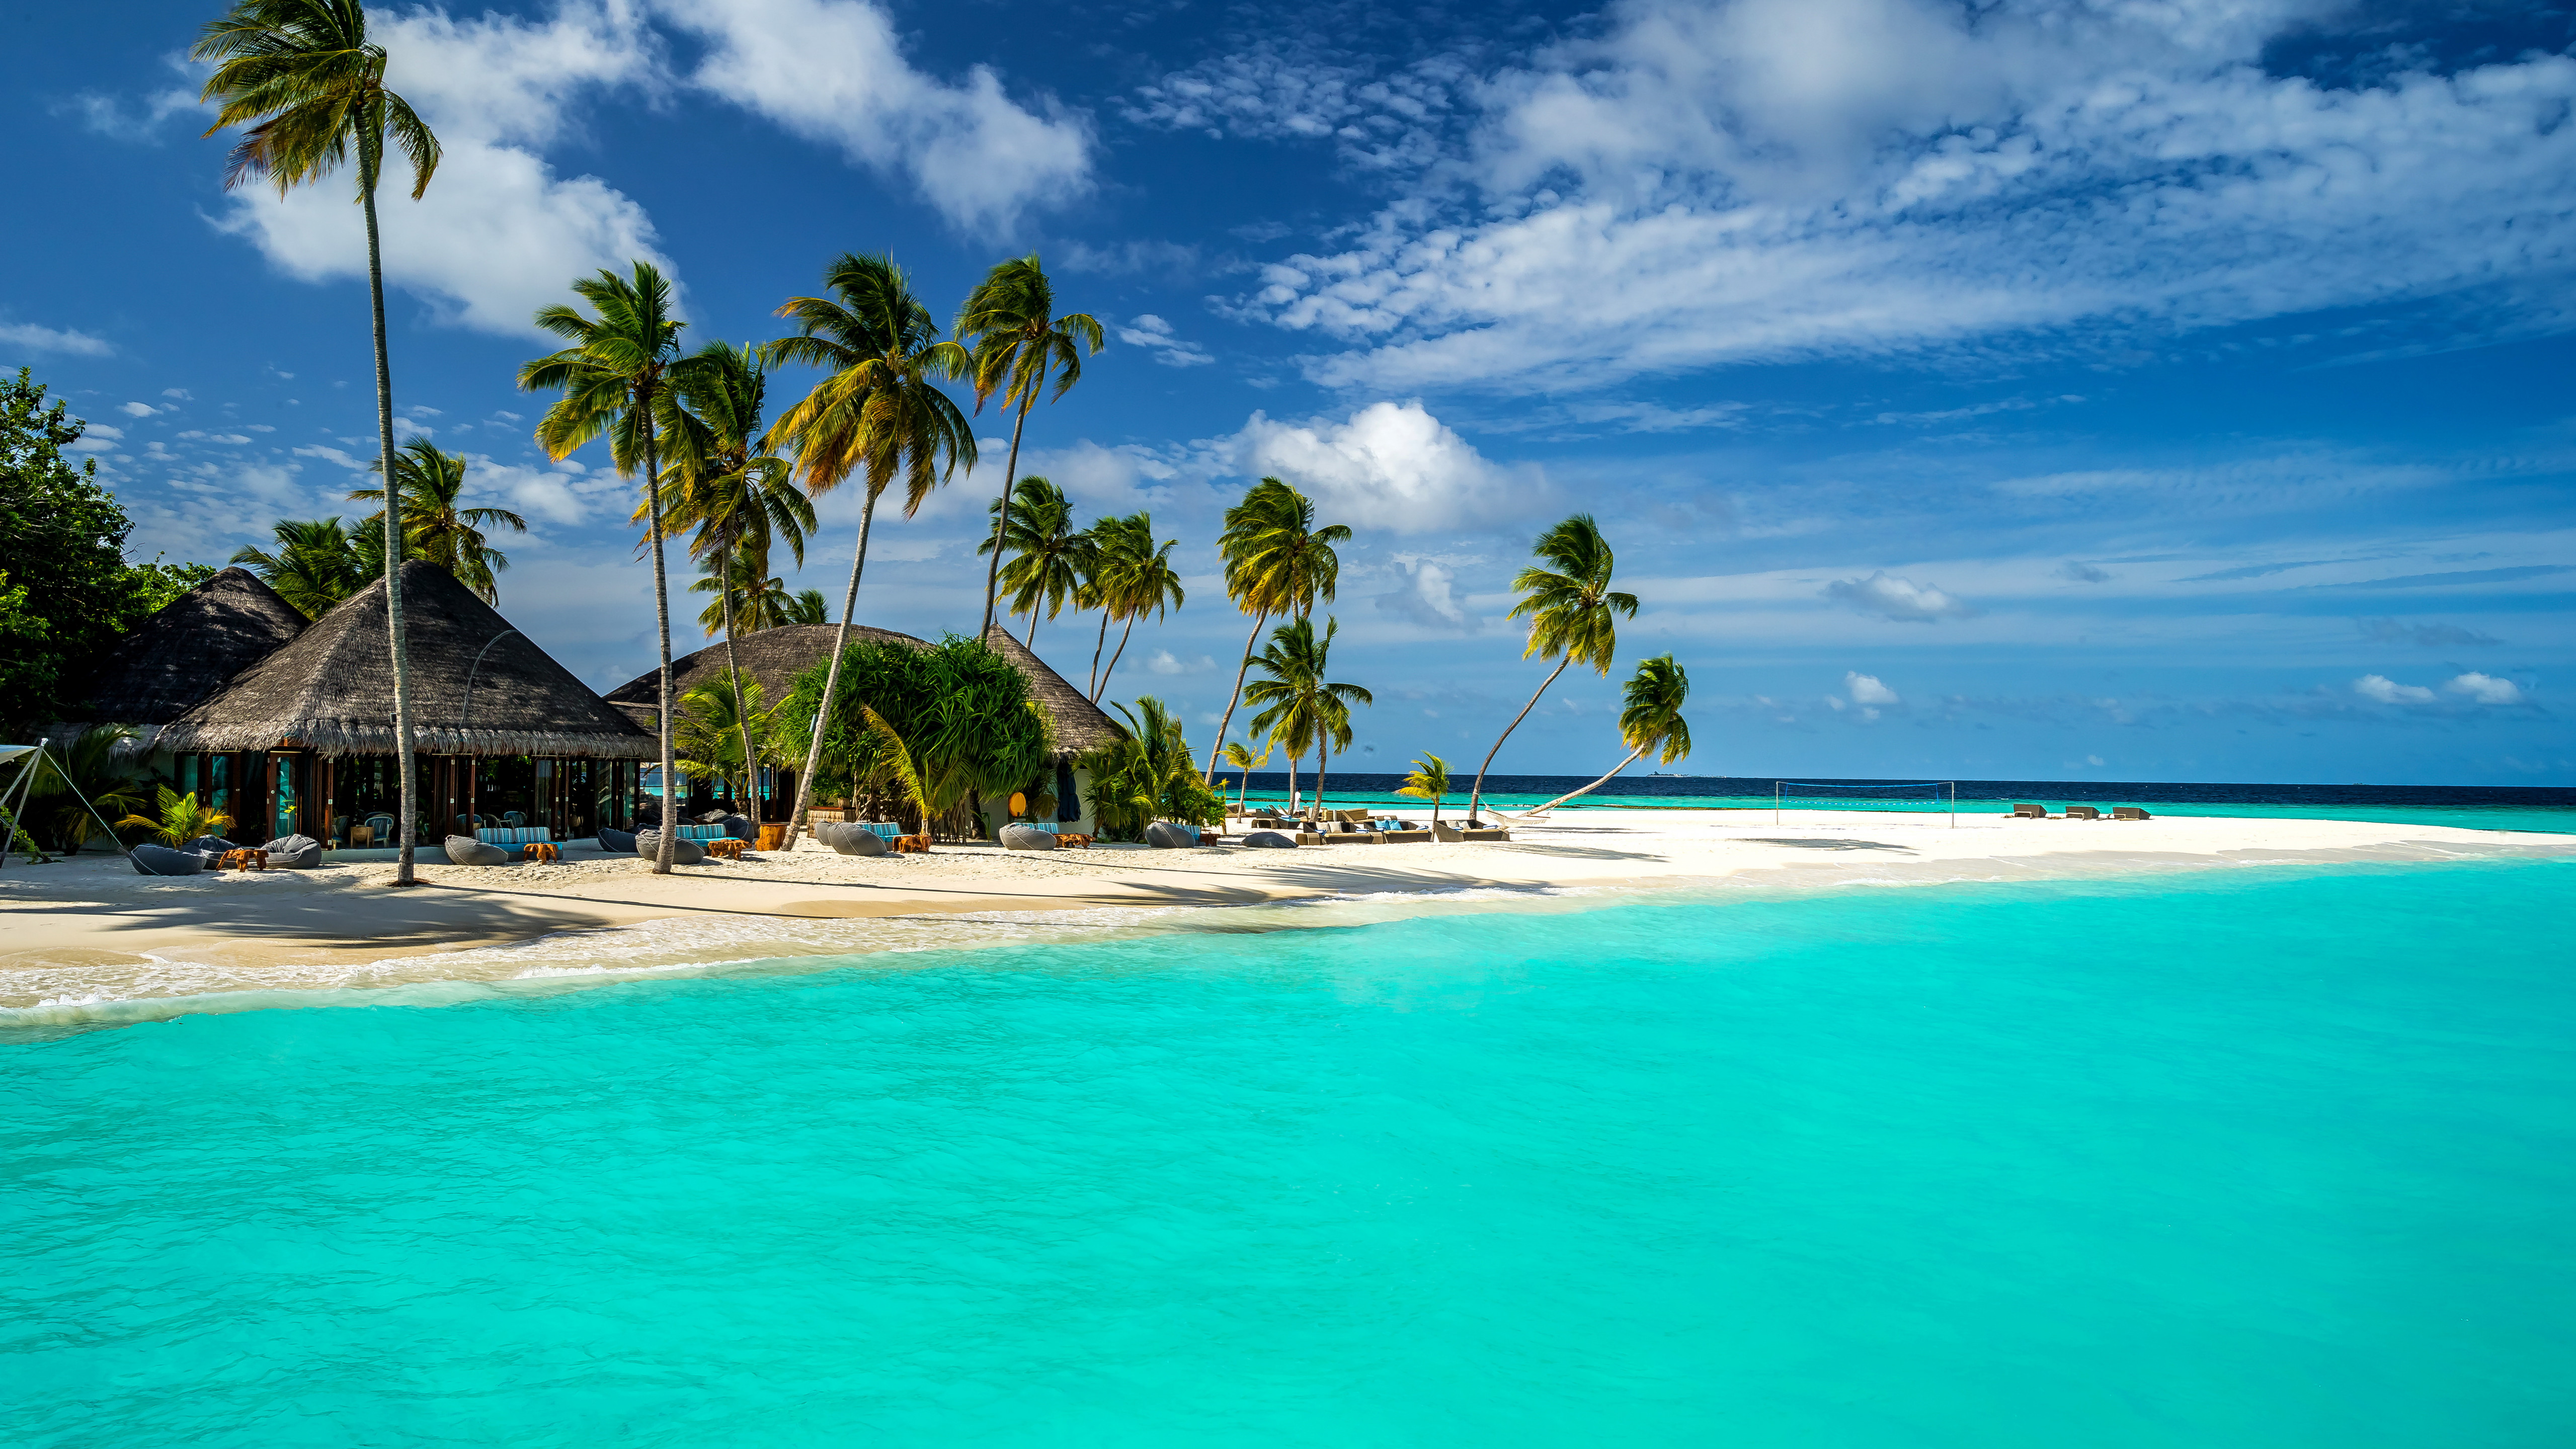 Обои Мальдивы, 5k, 4k, 8k, Индийский Океан, и на русском Лучшие в мире пляжи, пальмы, берег, небо, Maldives, 5k, 4k wallpaper, 8k, Indian Ocean, Best Beaches in the World palms, shore, sky,